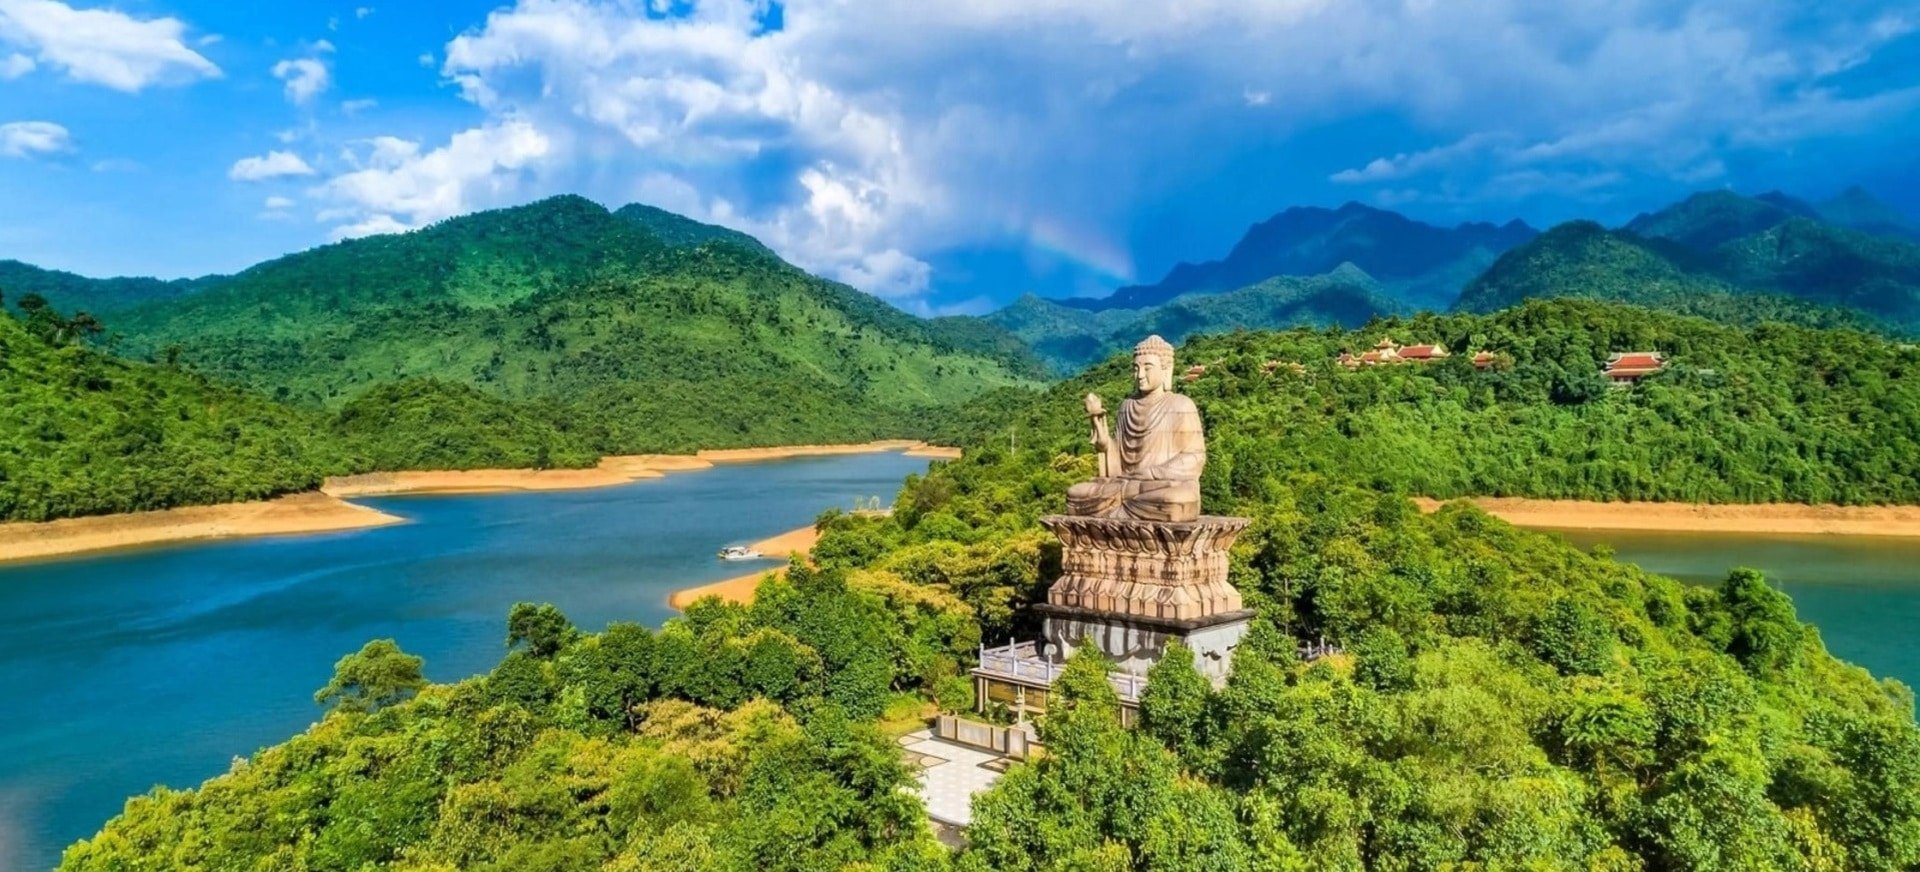 Thiền Viện Trúc Lâm Bạch Mã - Điểm du lịch Huế không thể bỏ lỡ